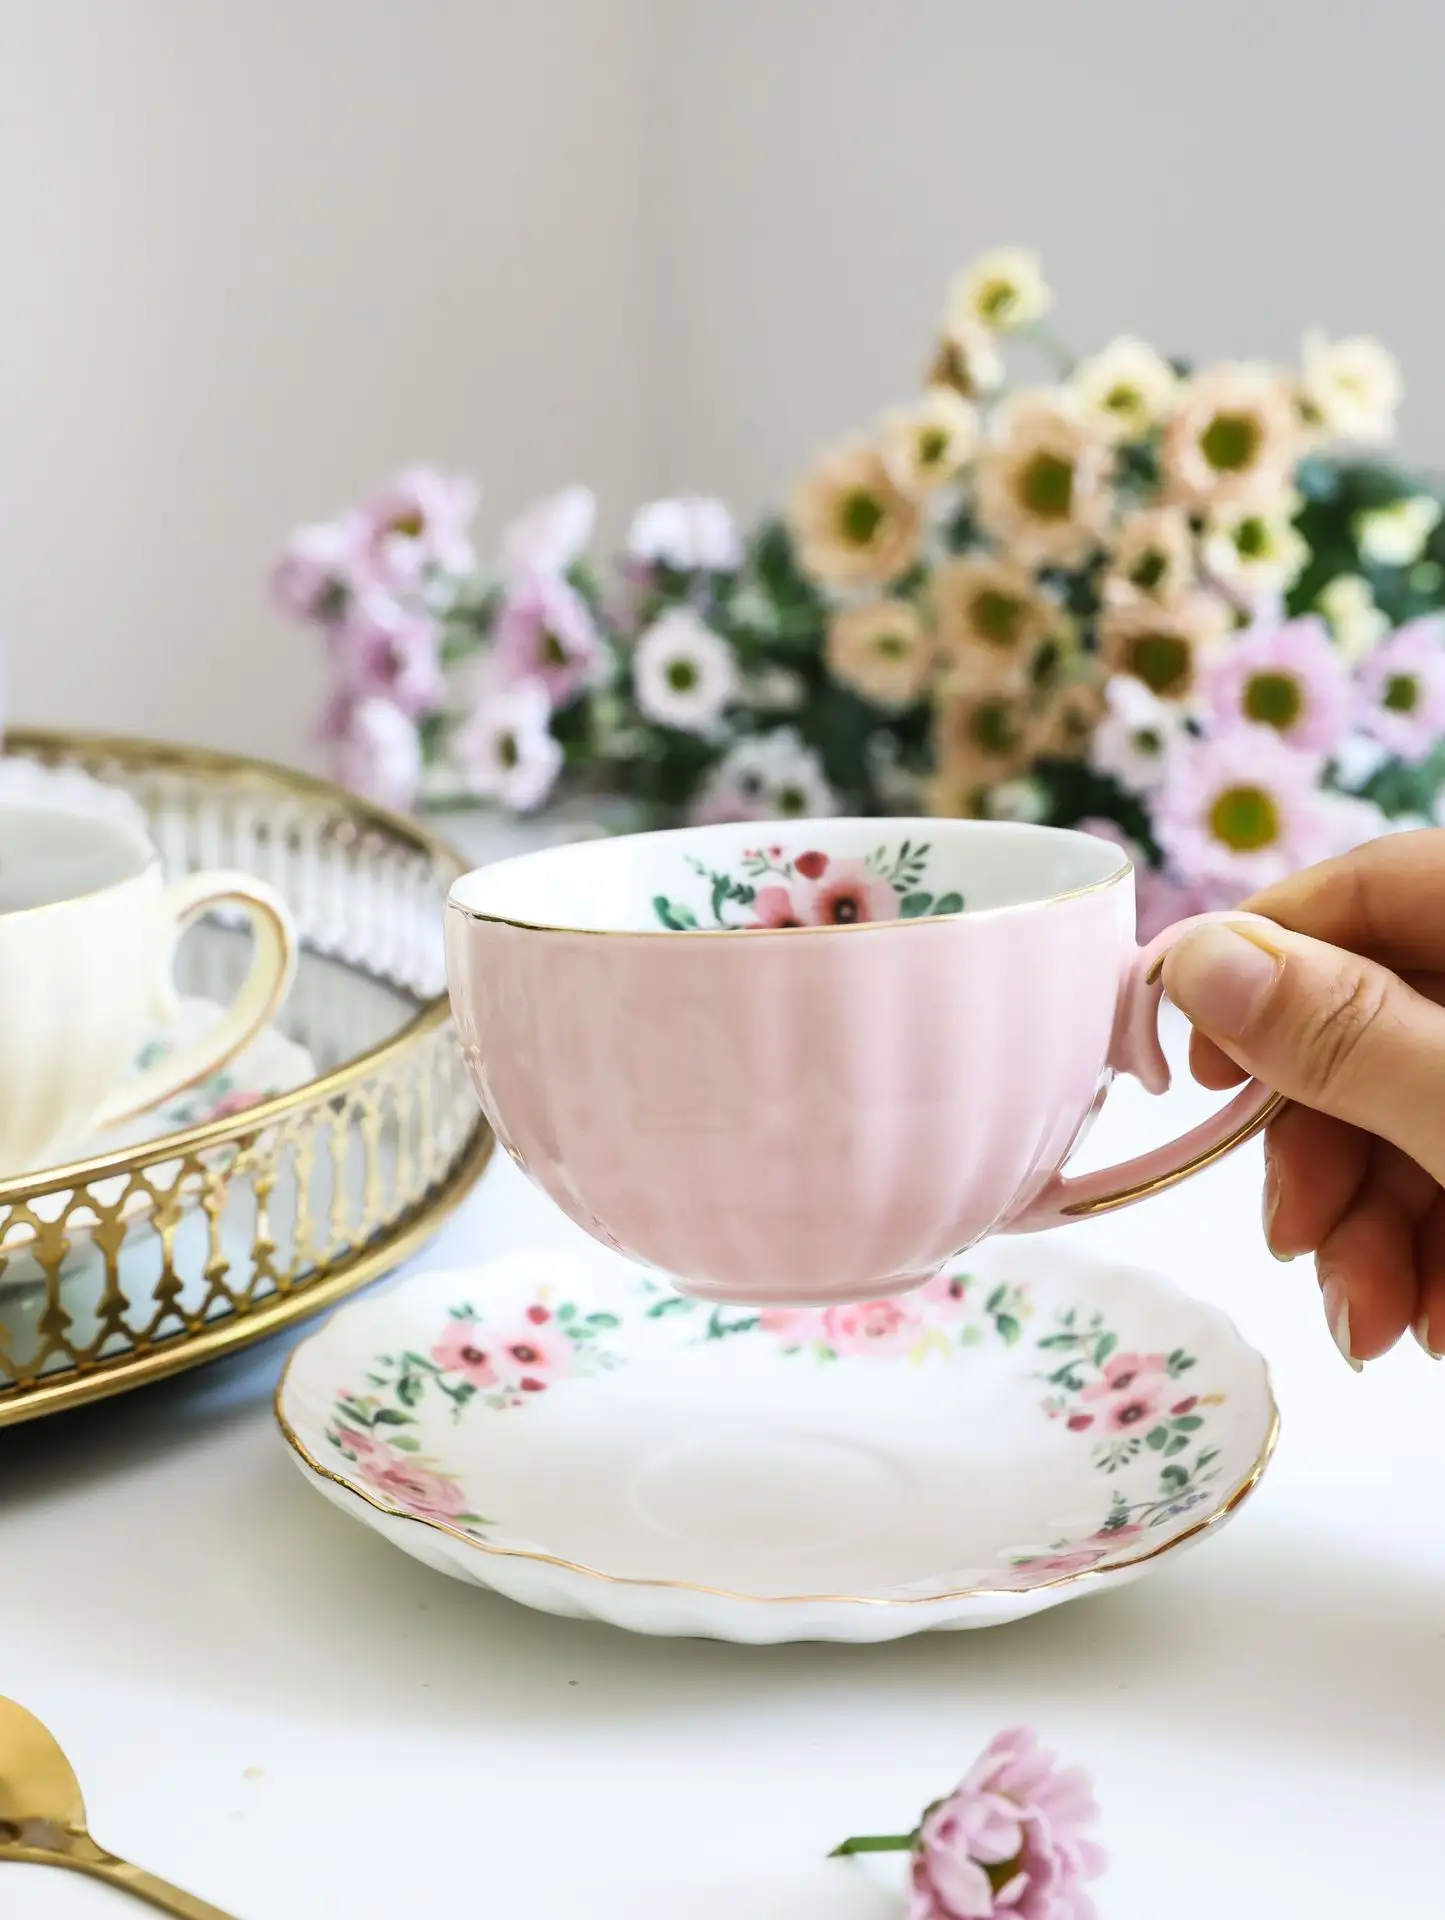 दोपहर की चाय और कॉफी ब्रेक के लिए यूरोपीय शैली की कॉफी और चाय का सेट सिरेमिक फूल पैटर्न दूध कप और तश्तरी